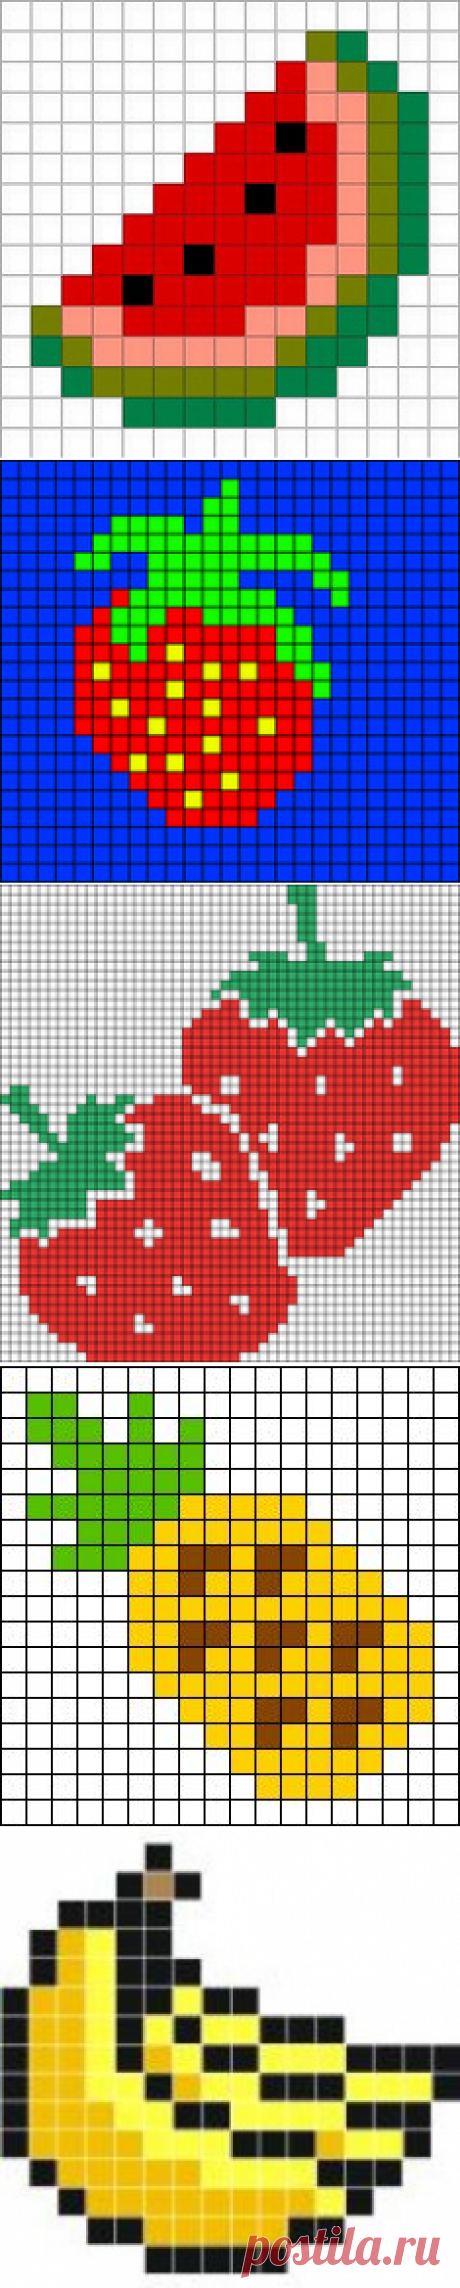 Рисунки фрукты По клеточкам в тетради (32 картинок)